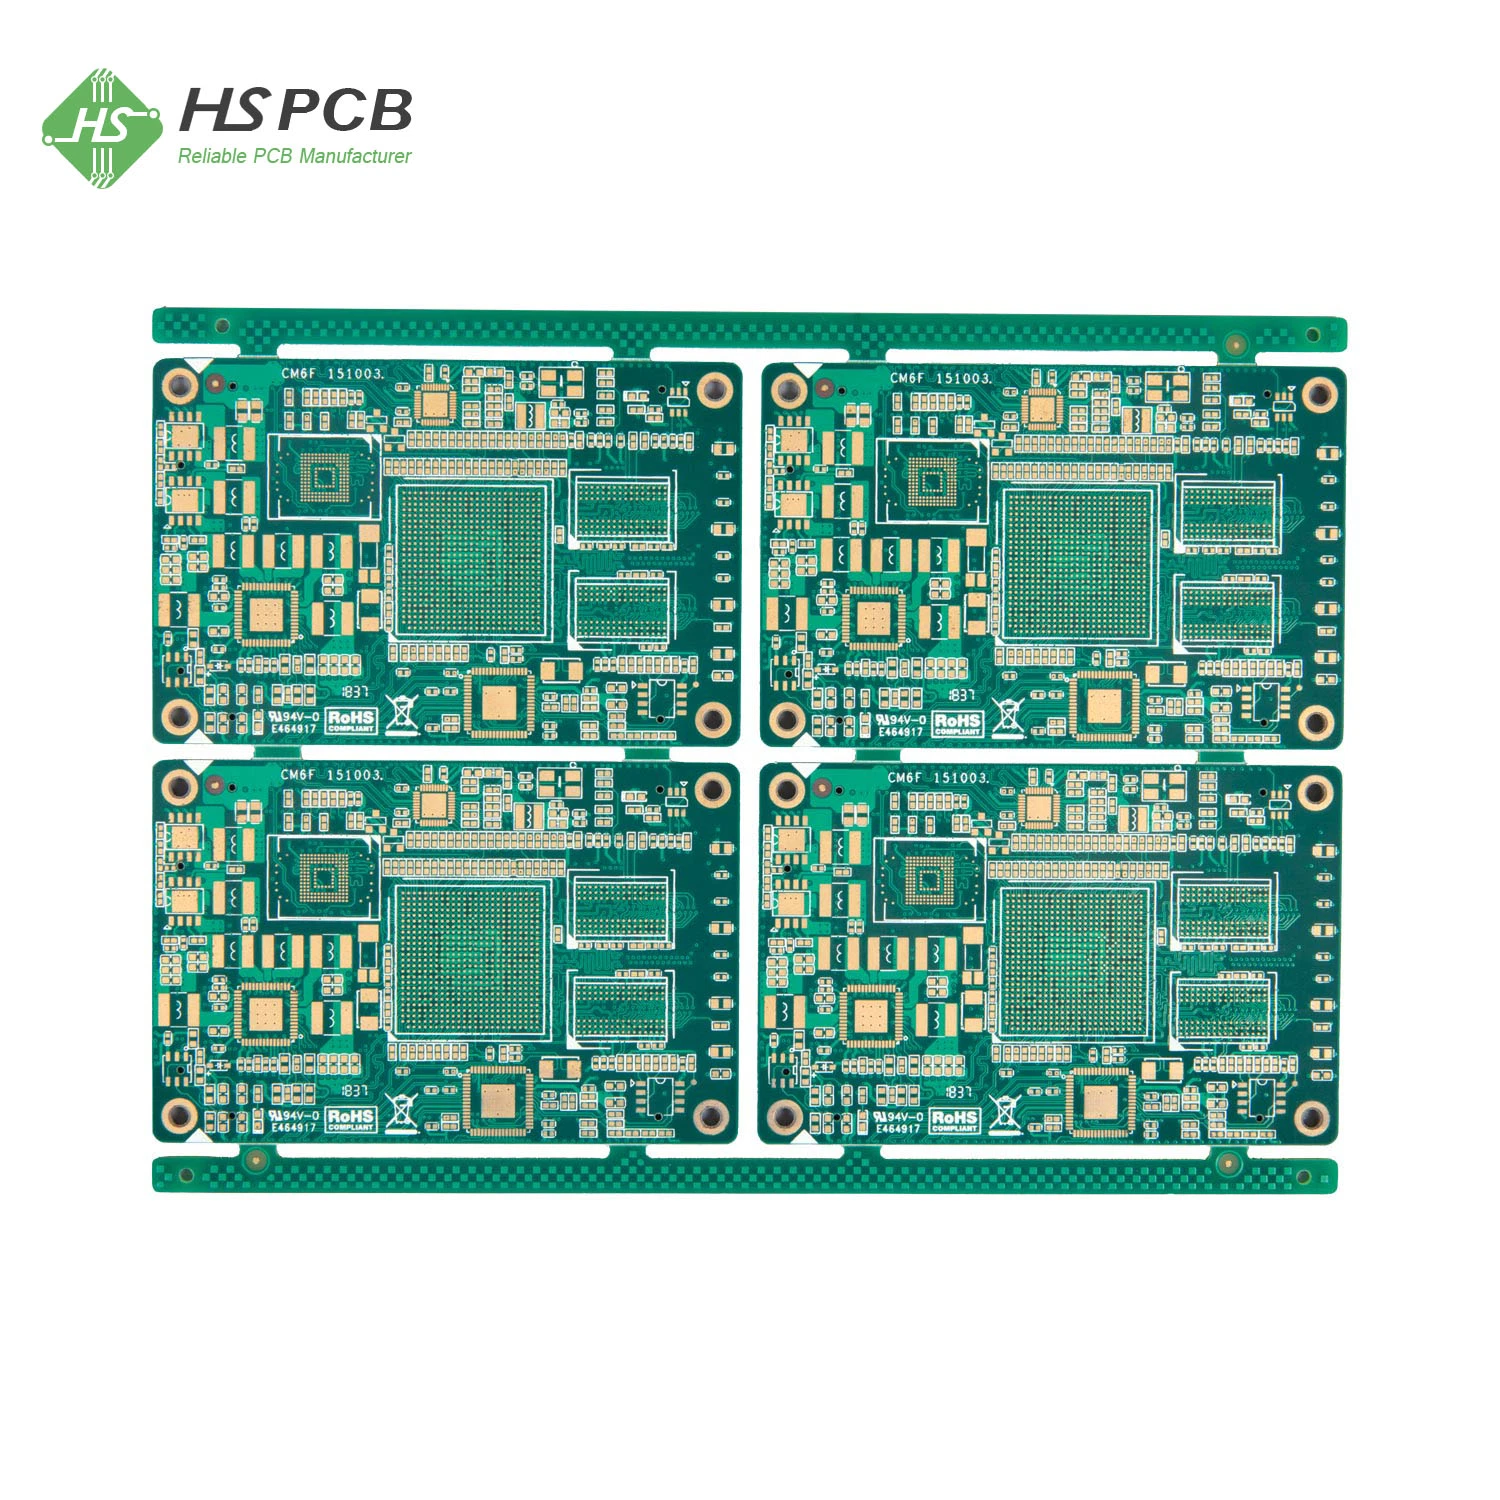 Fabricante de placas de circuito impreso de alta calidad de múltiples capas para electrónica de consumo